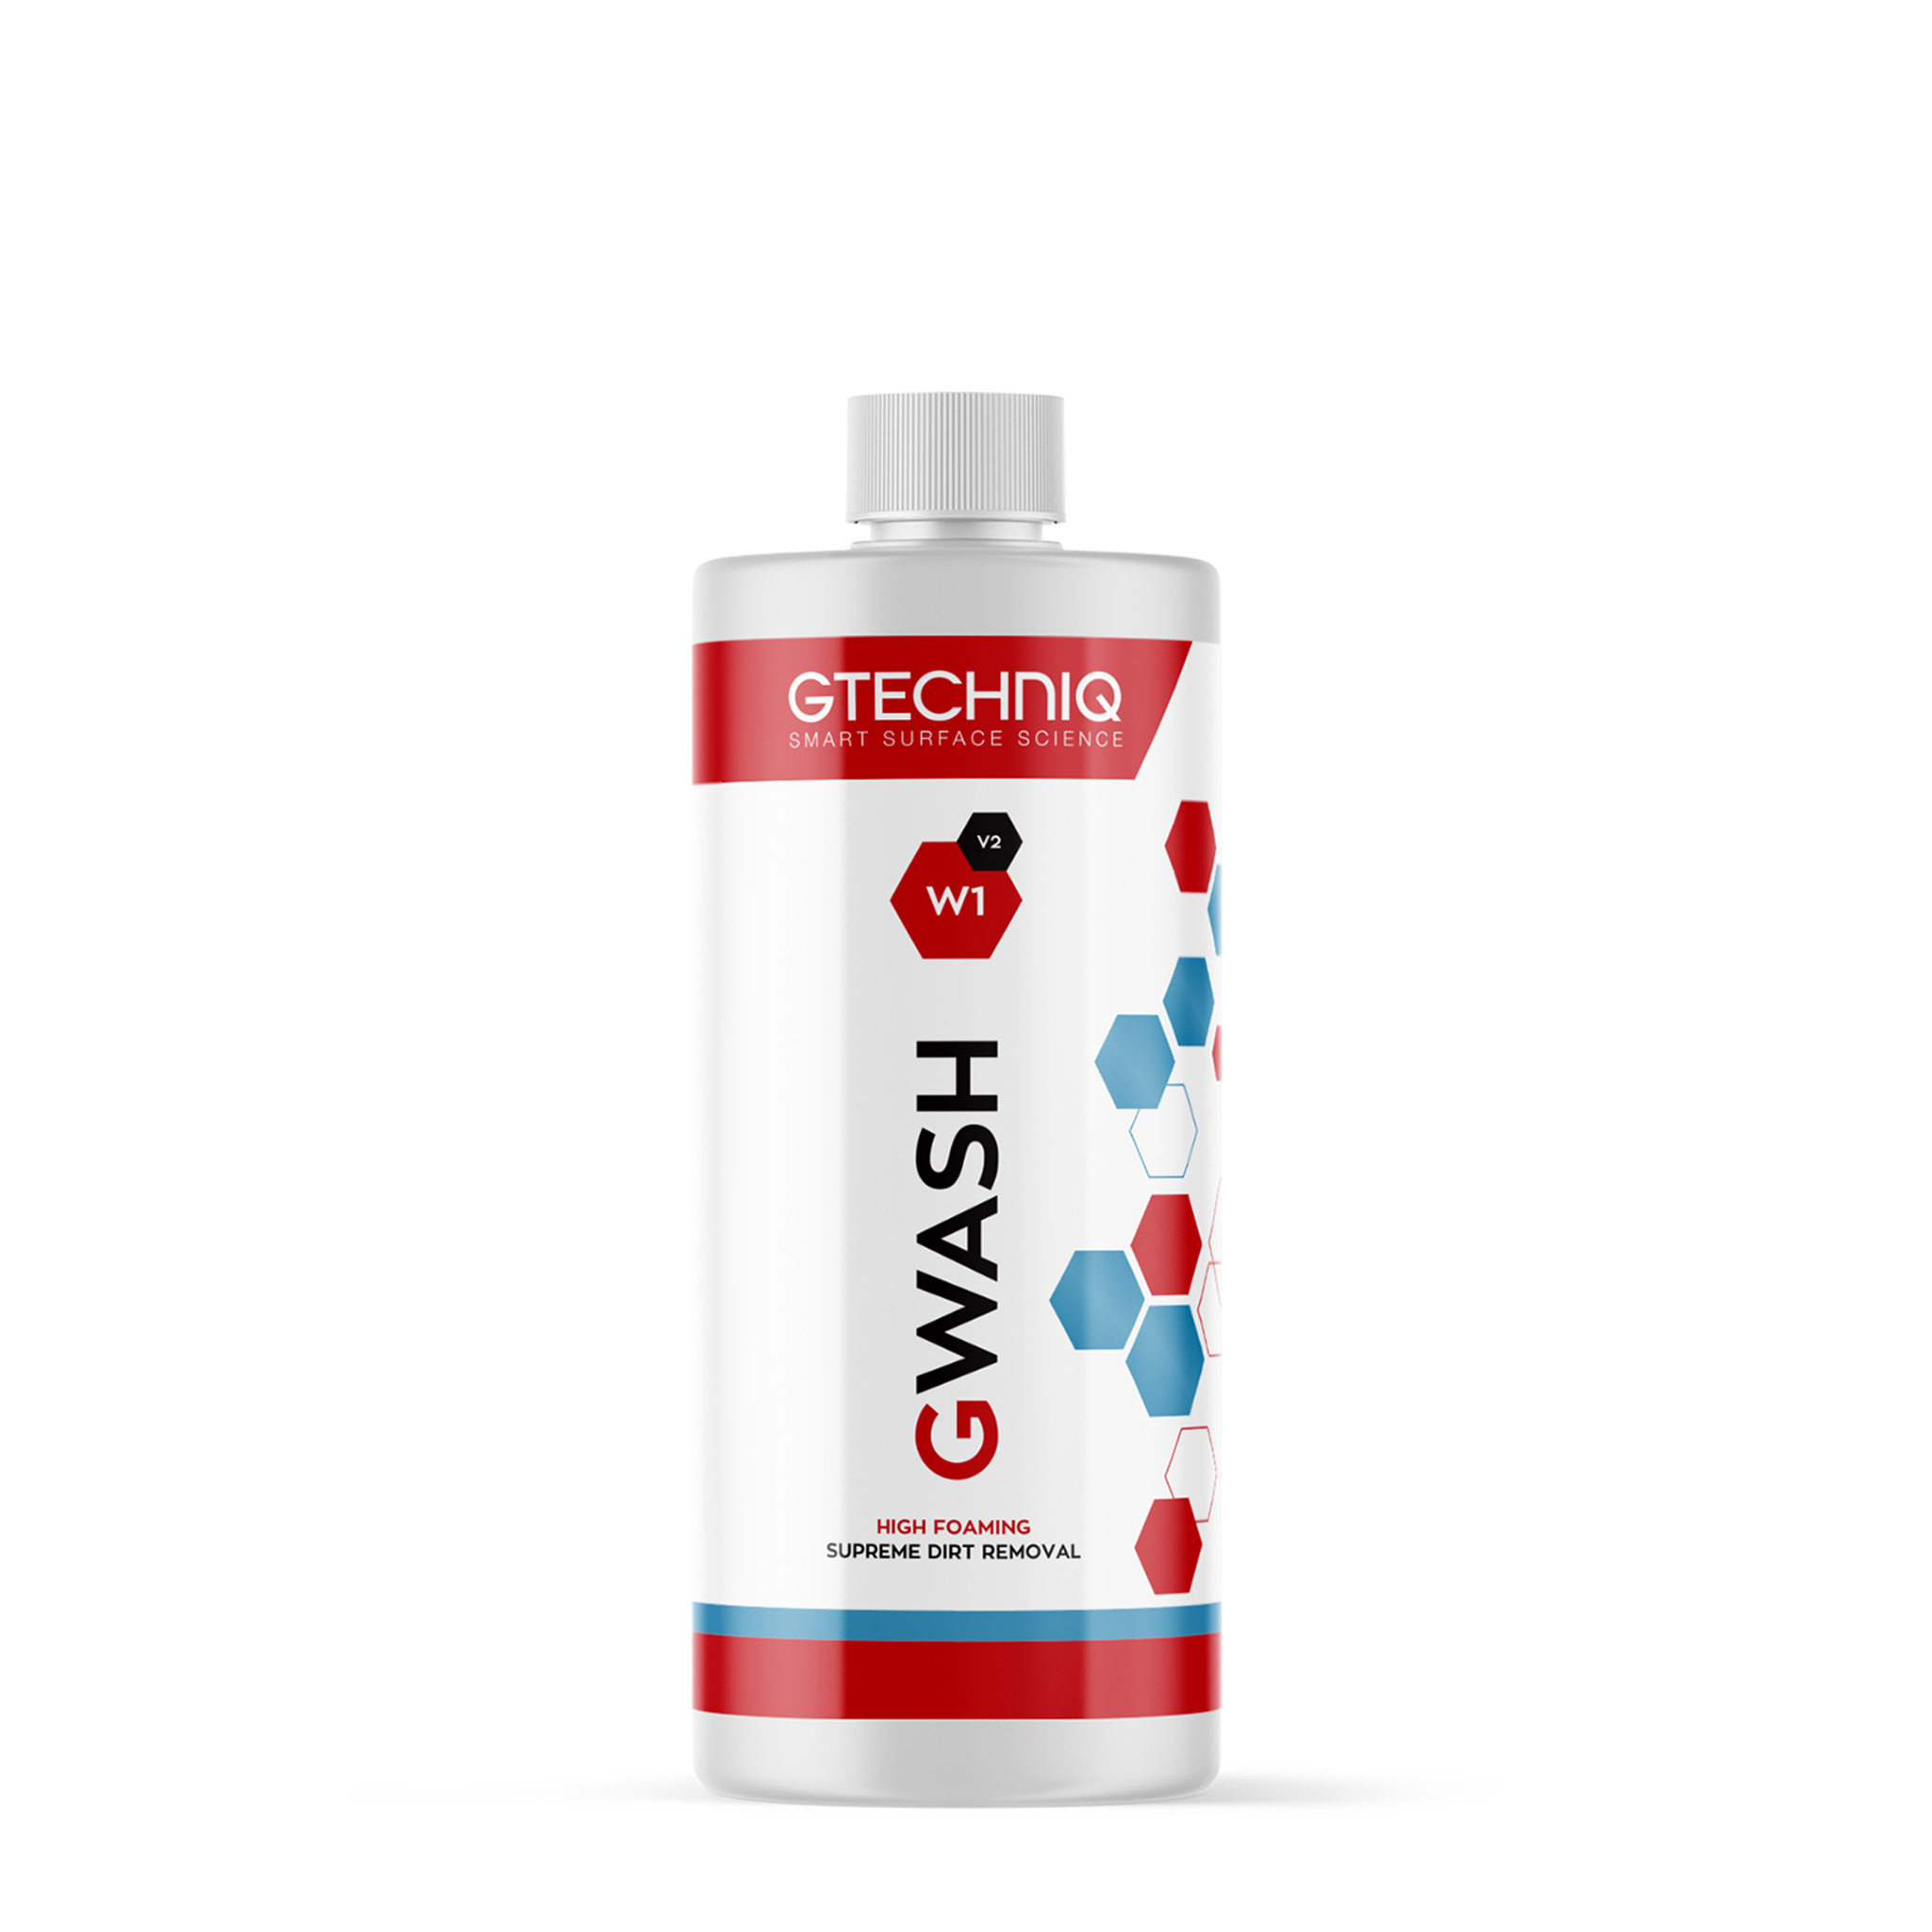 Bilshampo Gtechniq W1 GWash V2, 1000 ml